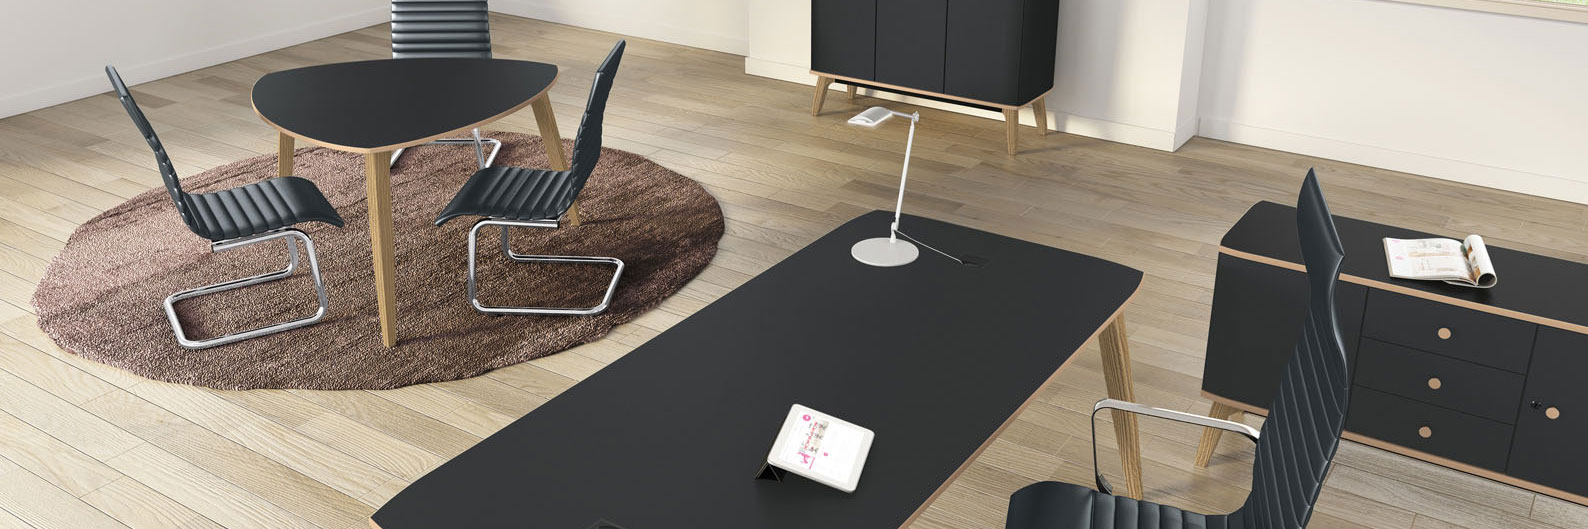 Table et bureau design pour meubler vos locaux professionnels